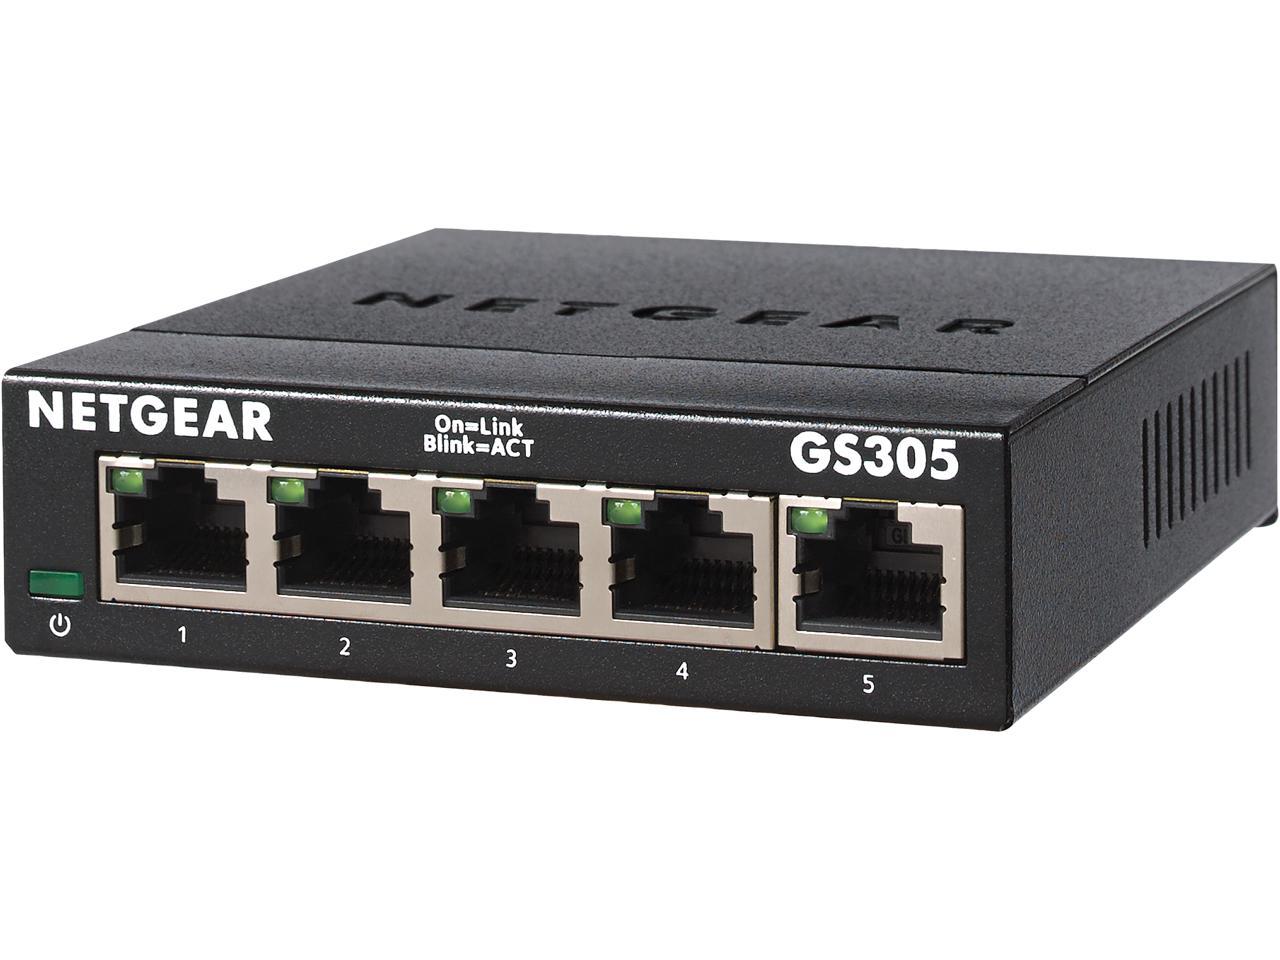 NETGEAR GS305-300PAS 5-port Gigabit Ethernet Unmanaged Switch (GS305)